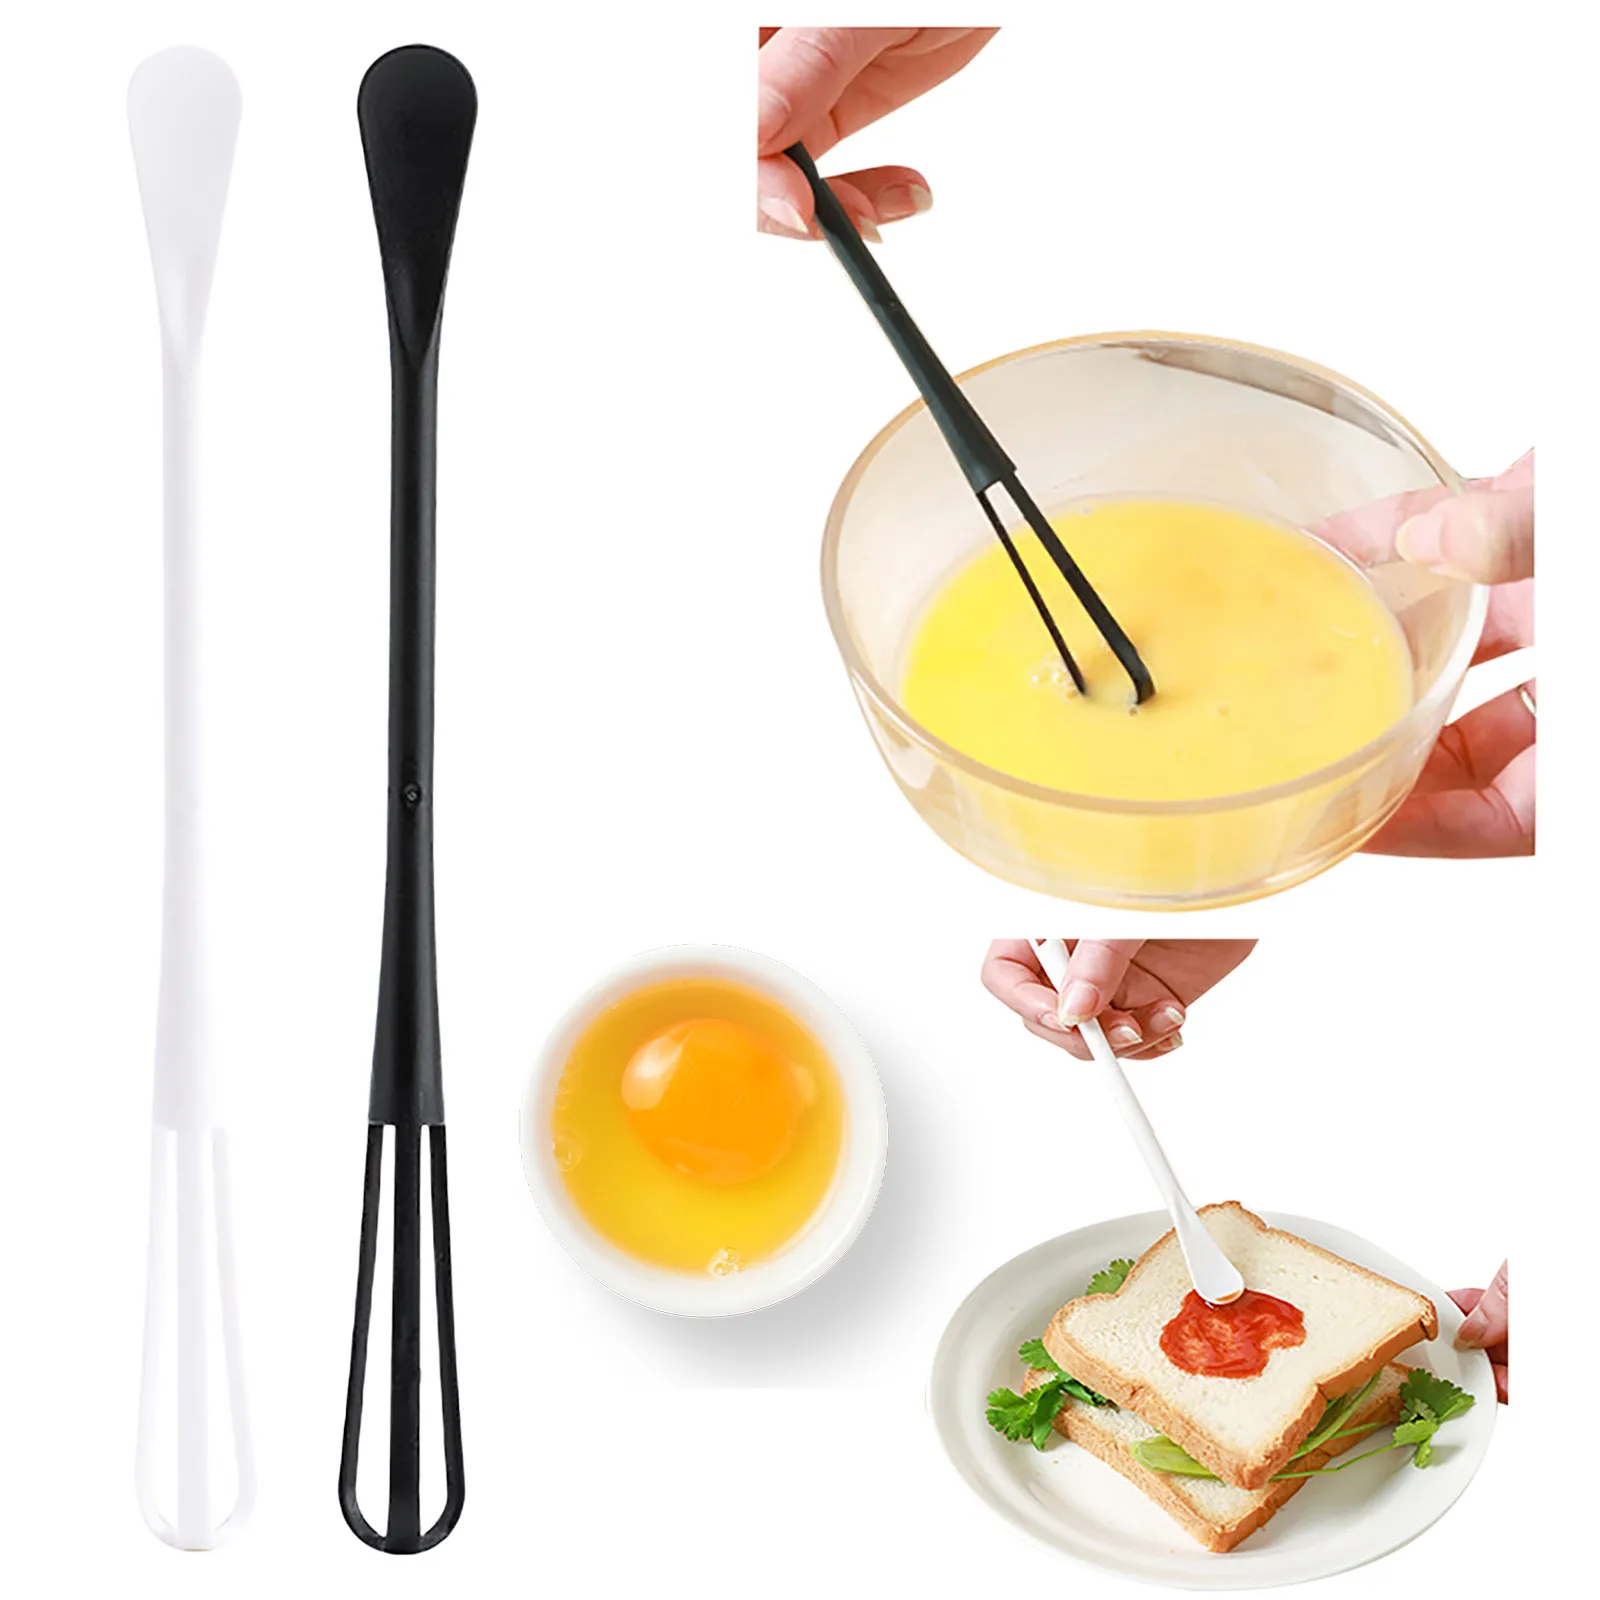 

Новый Кухонный силиконовый венчик для яиц, Пенообразователь для молока, кухонная утварь, кухонный силиконовый инструмент для взбивания яиц, миксер для яиц, ложка для приправ